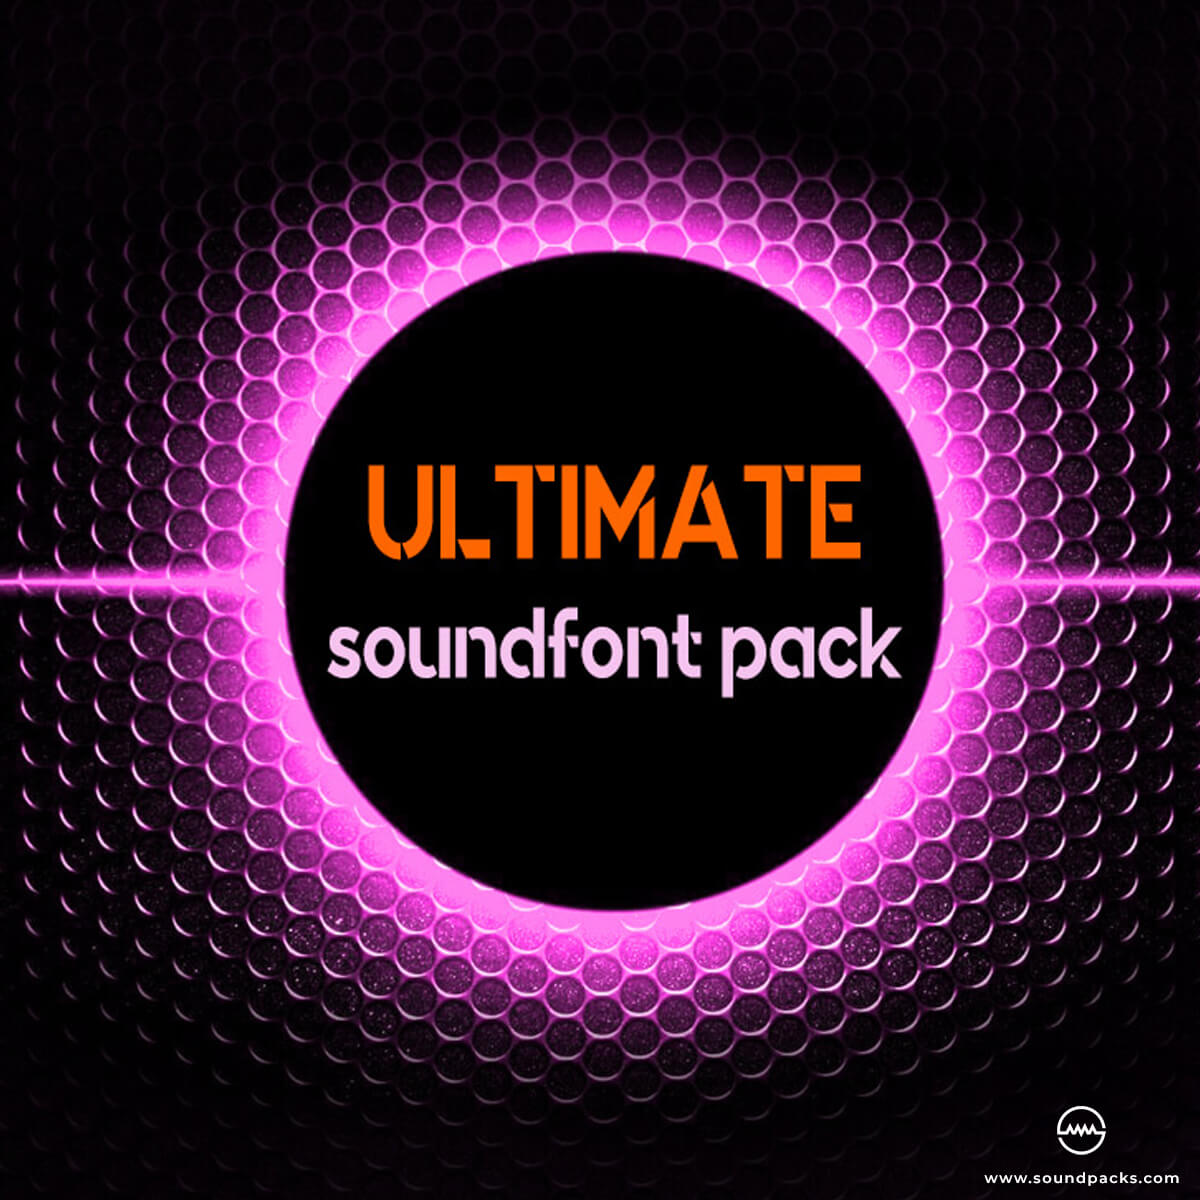 Ultimate SoundFont Pack